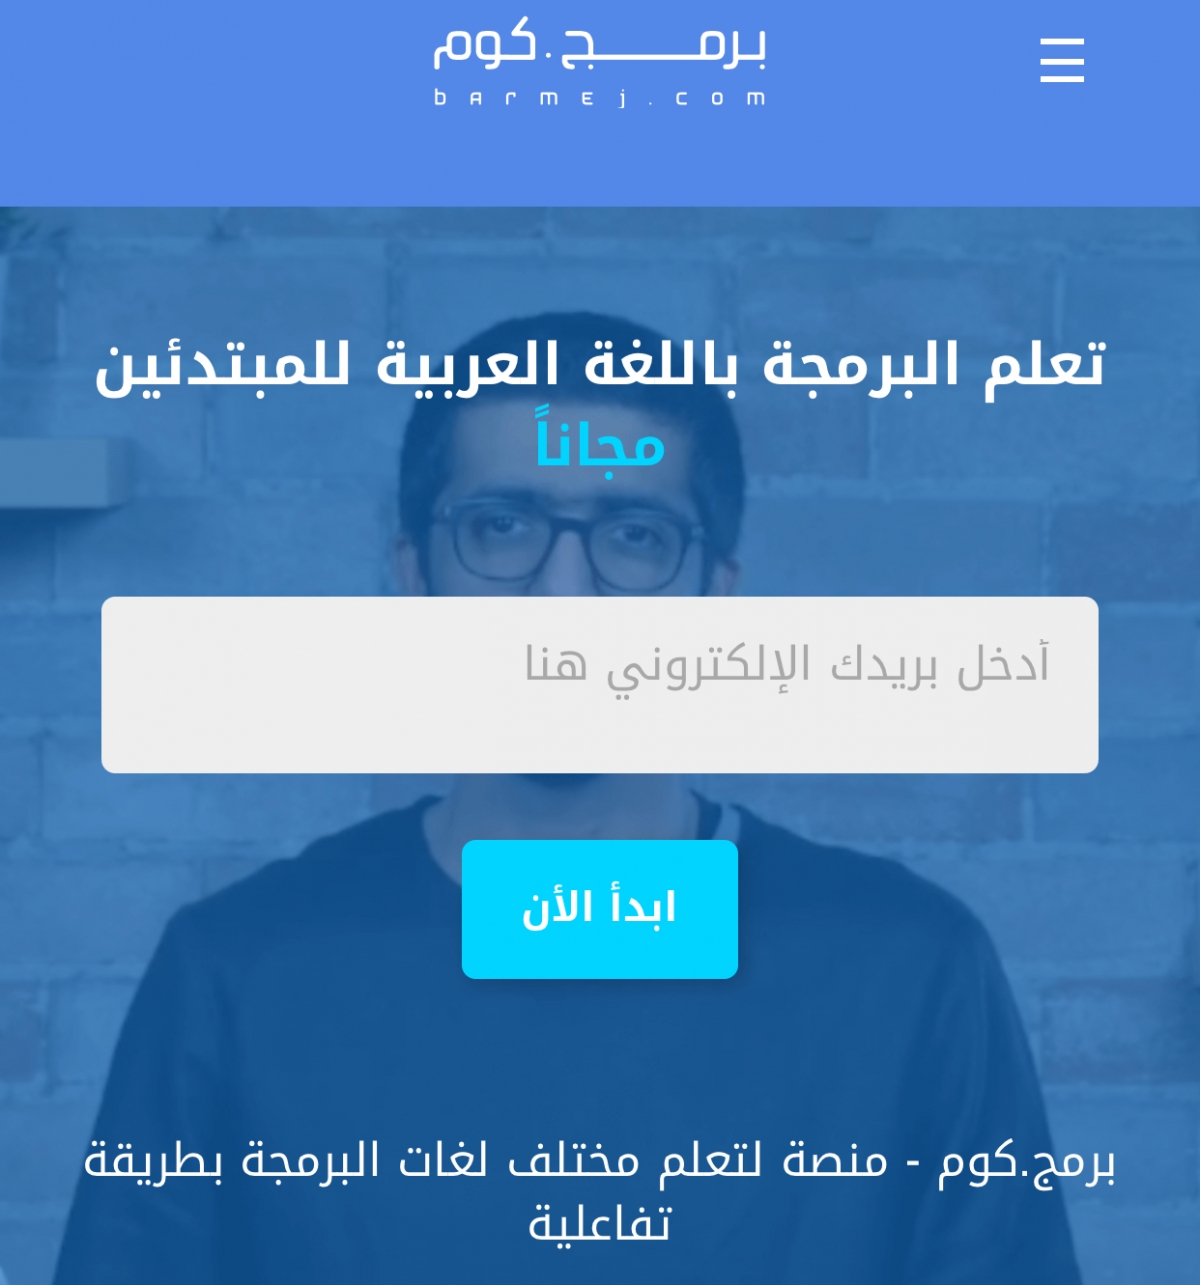 موقع عربي مفيد يحتوي على دورات تدريبية للغات البرمجة الشهيرة